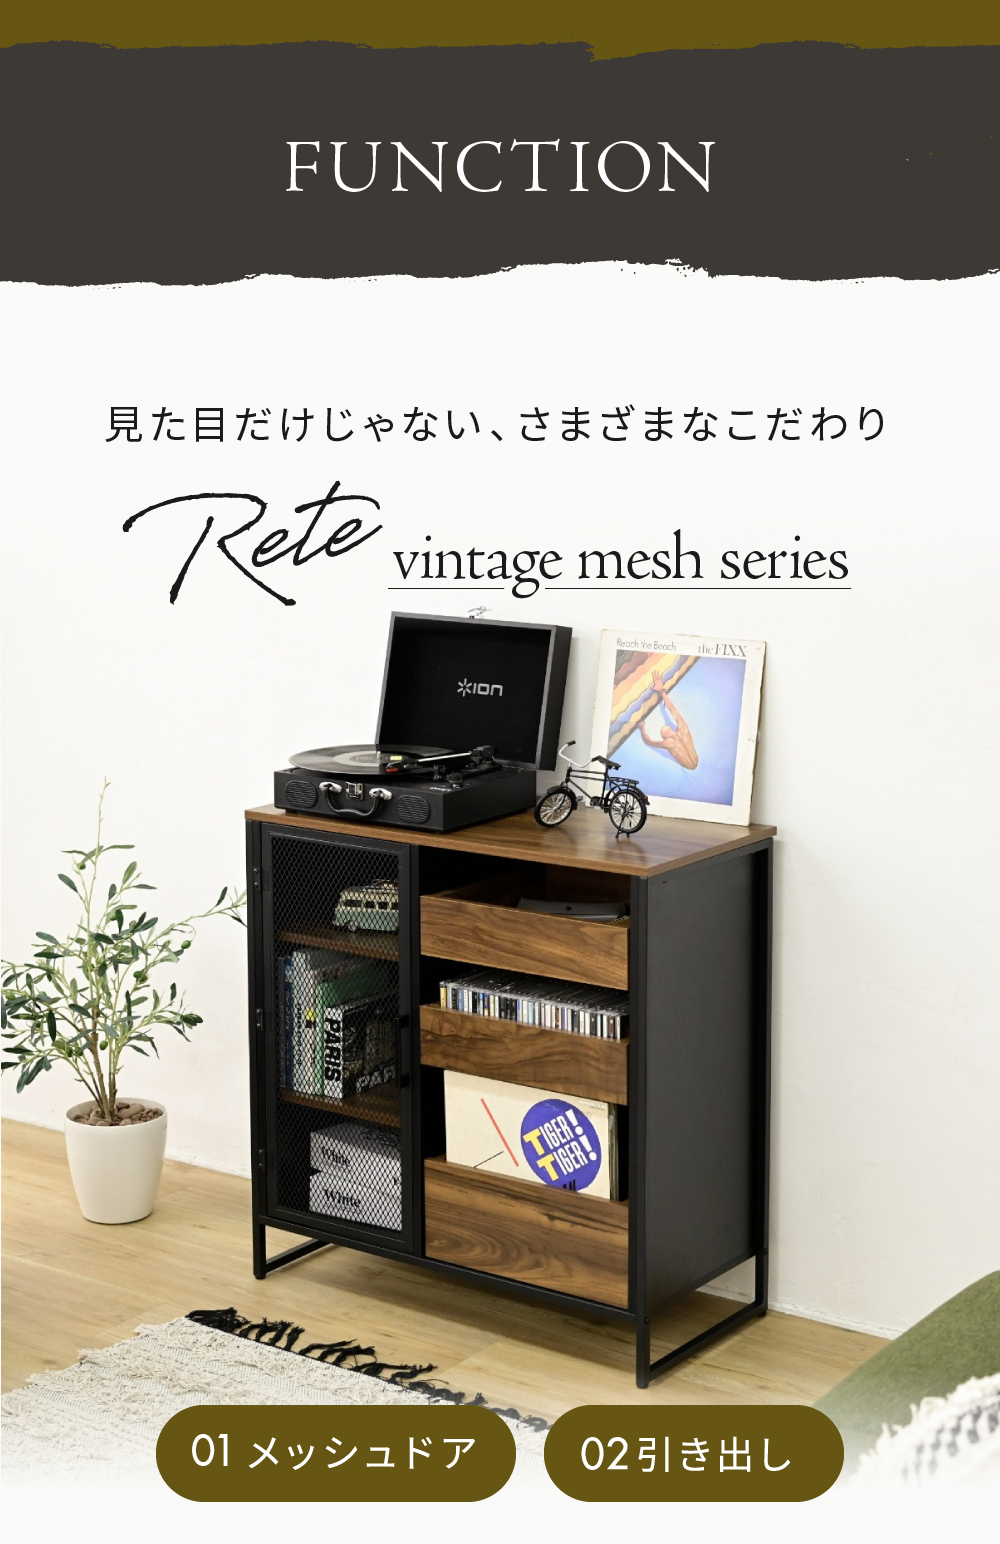 ヴインテージメッシュシリーズ Rete キャビネット TRT-0004 商品画像4